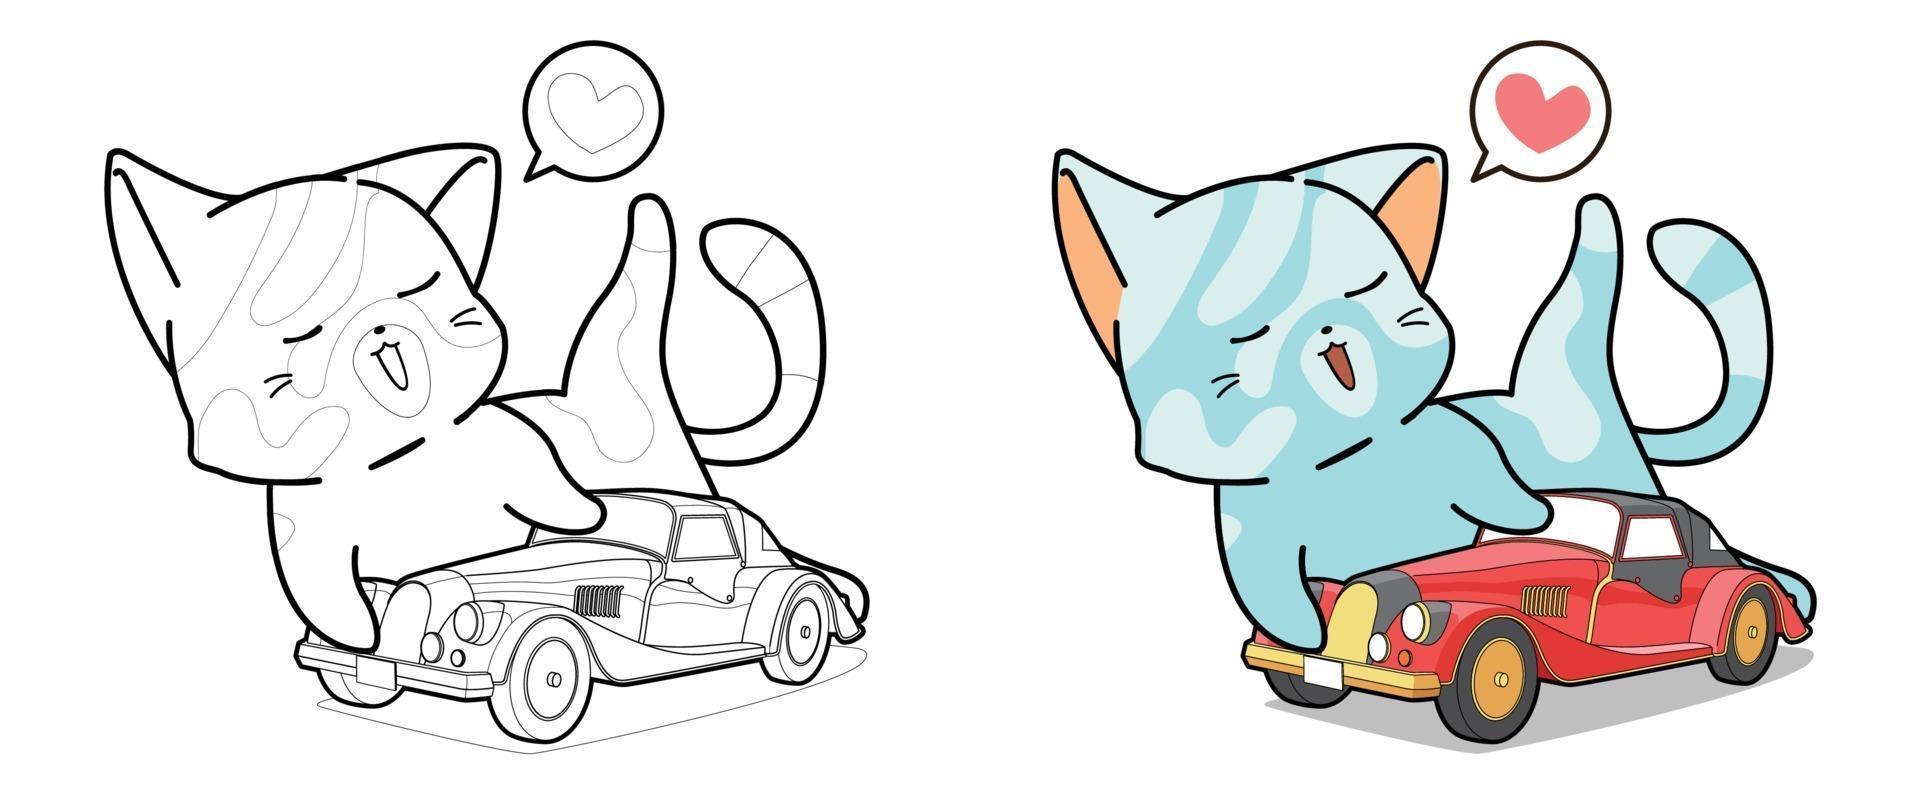 chat joue un coloriage de dessin animé de jouet de voiture pour les enfants vecteur